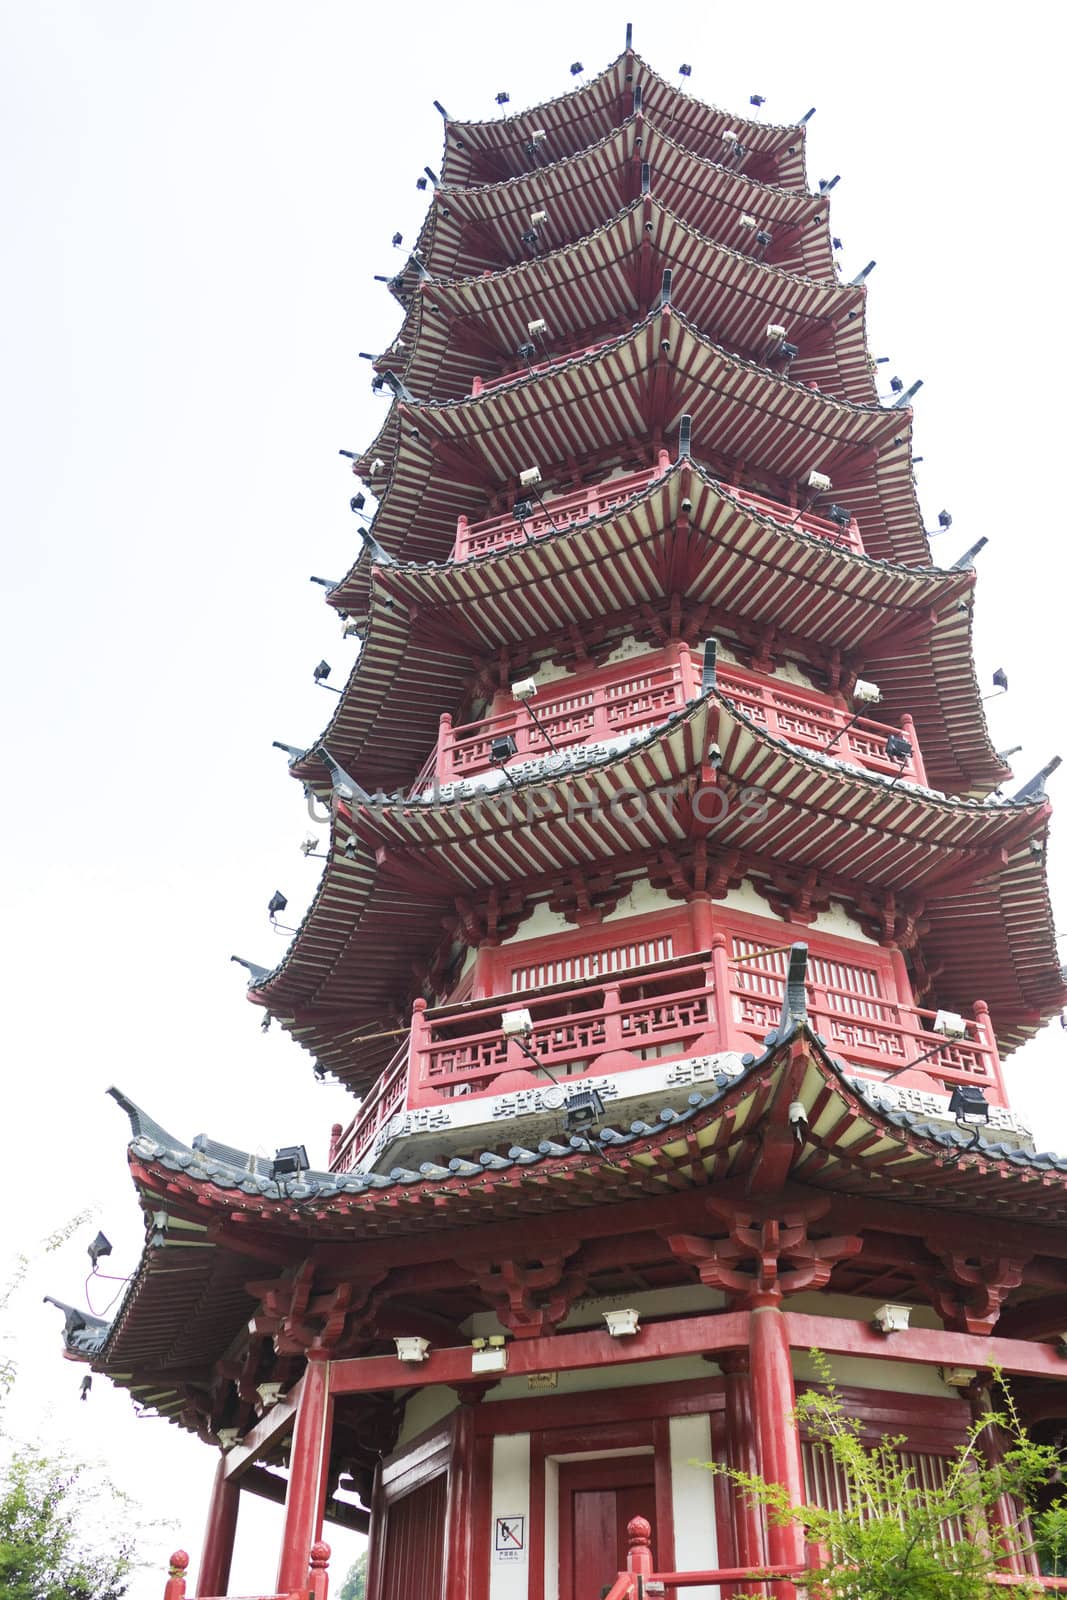 Image of the Mulong Lake Pagoda at Guilin, China.